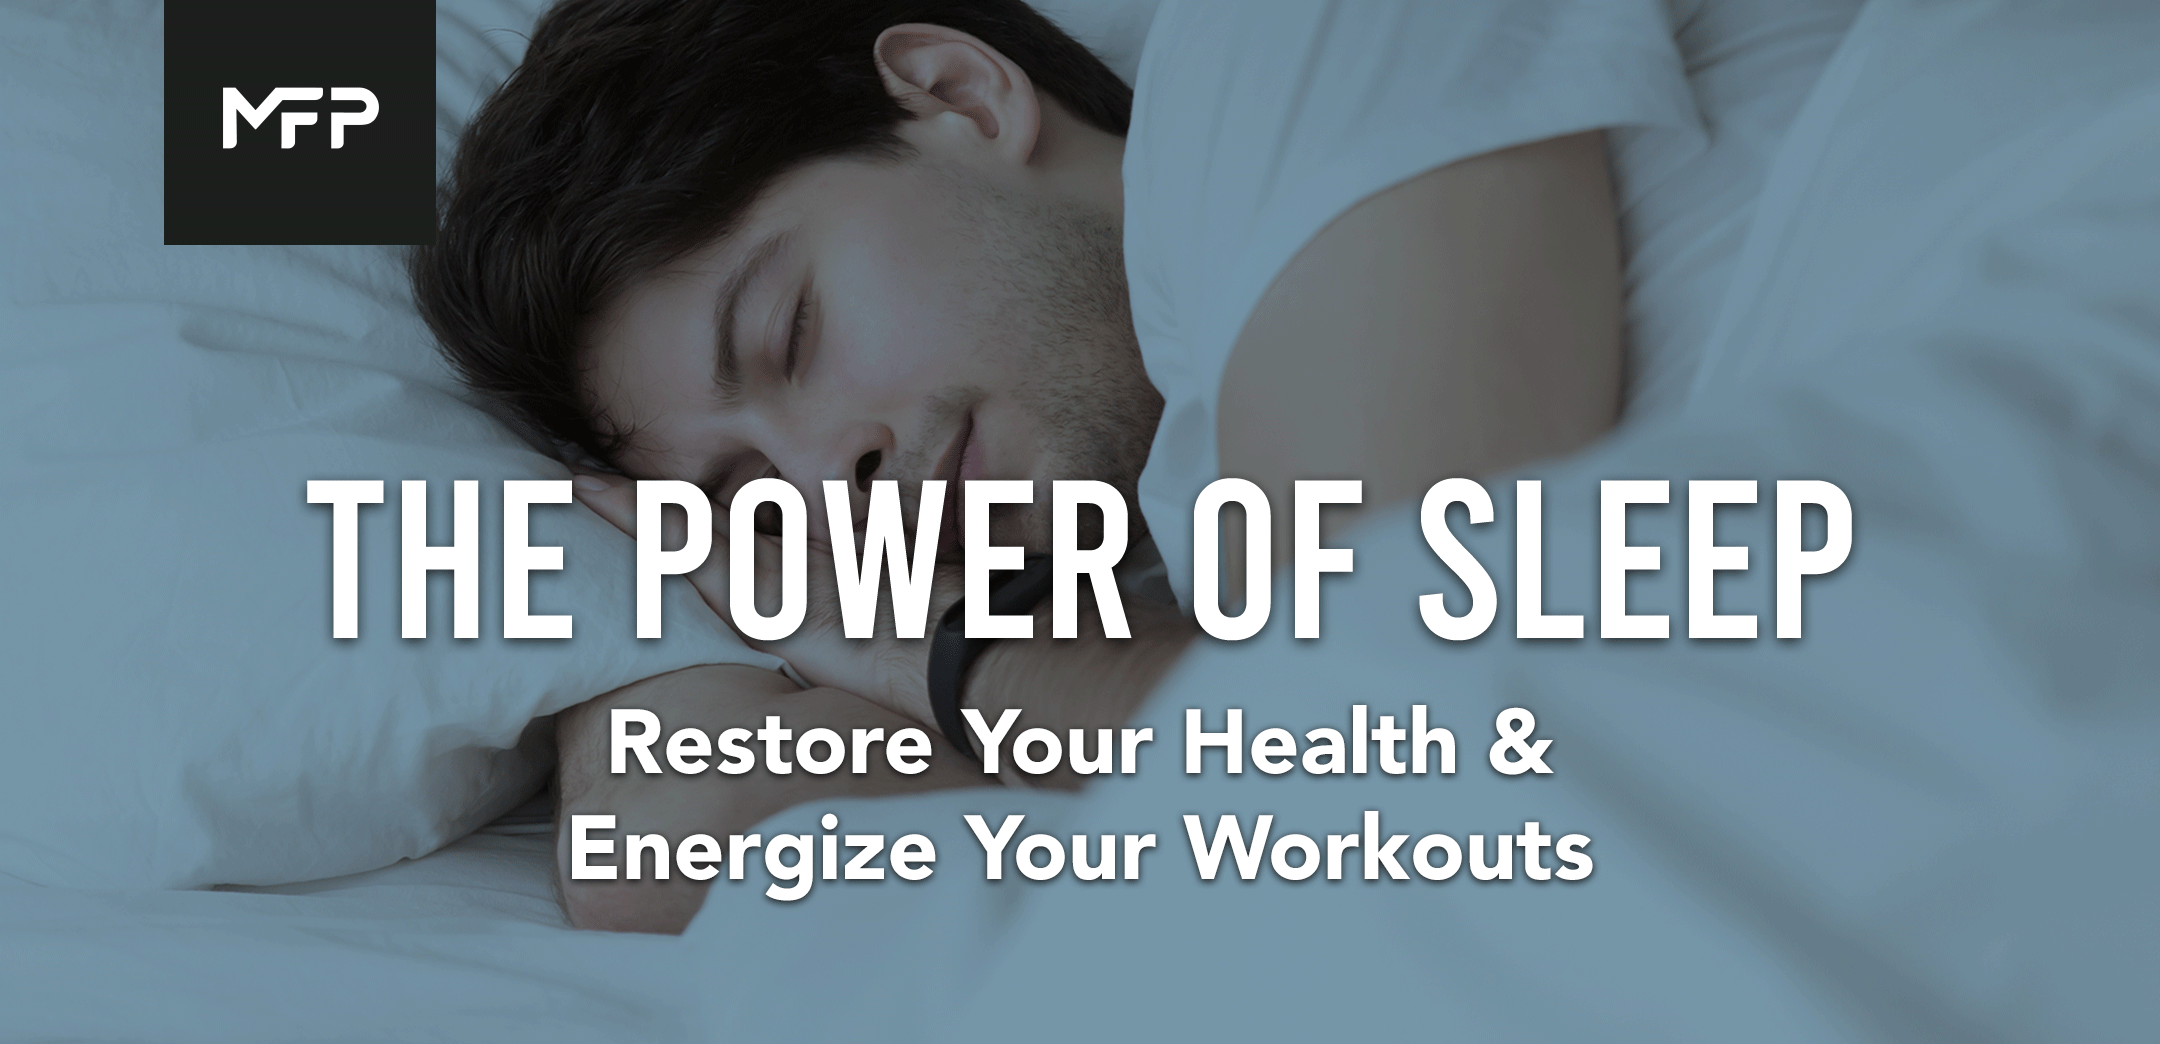 Power of Sleep Guide